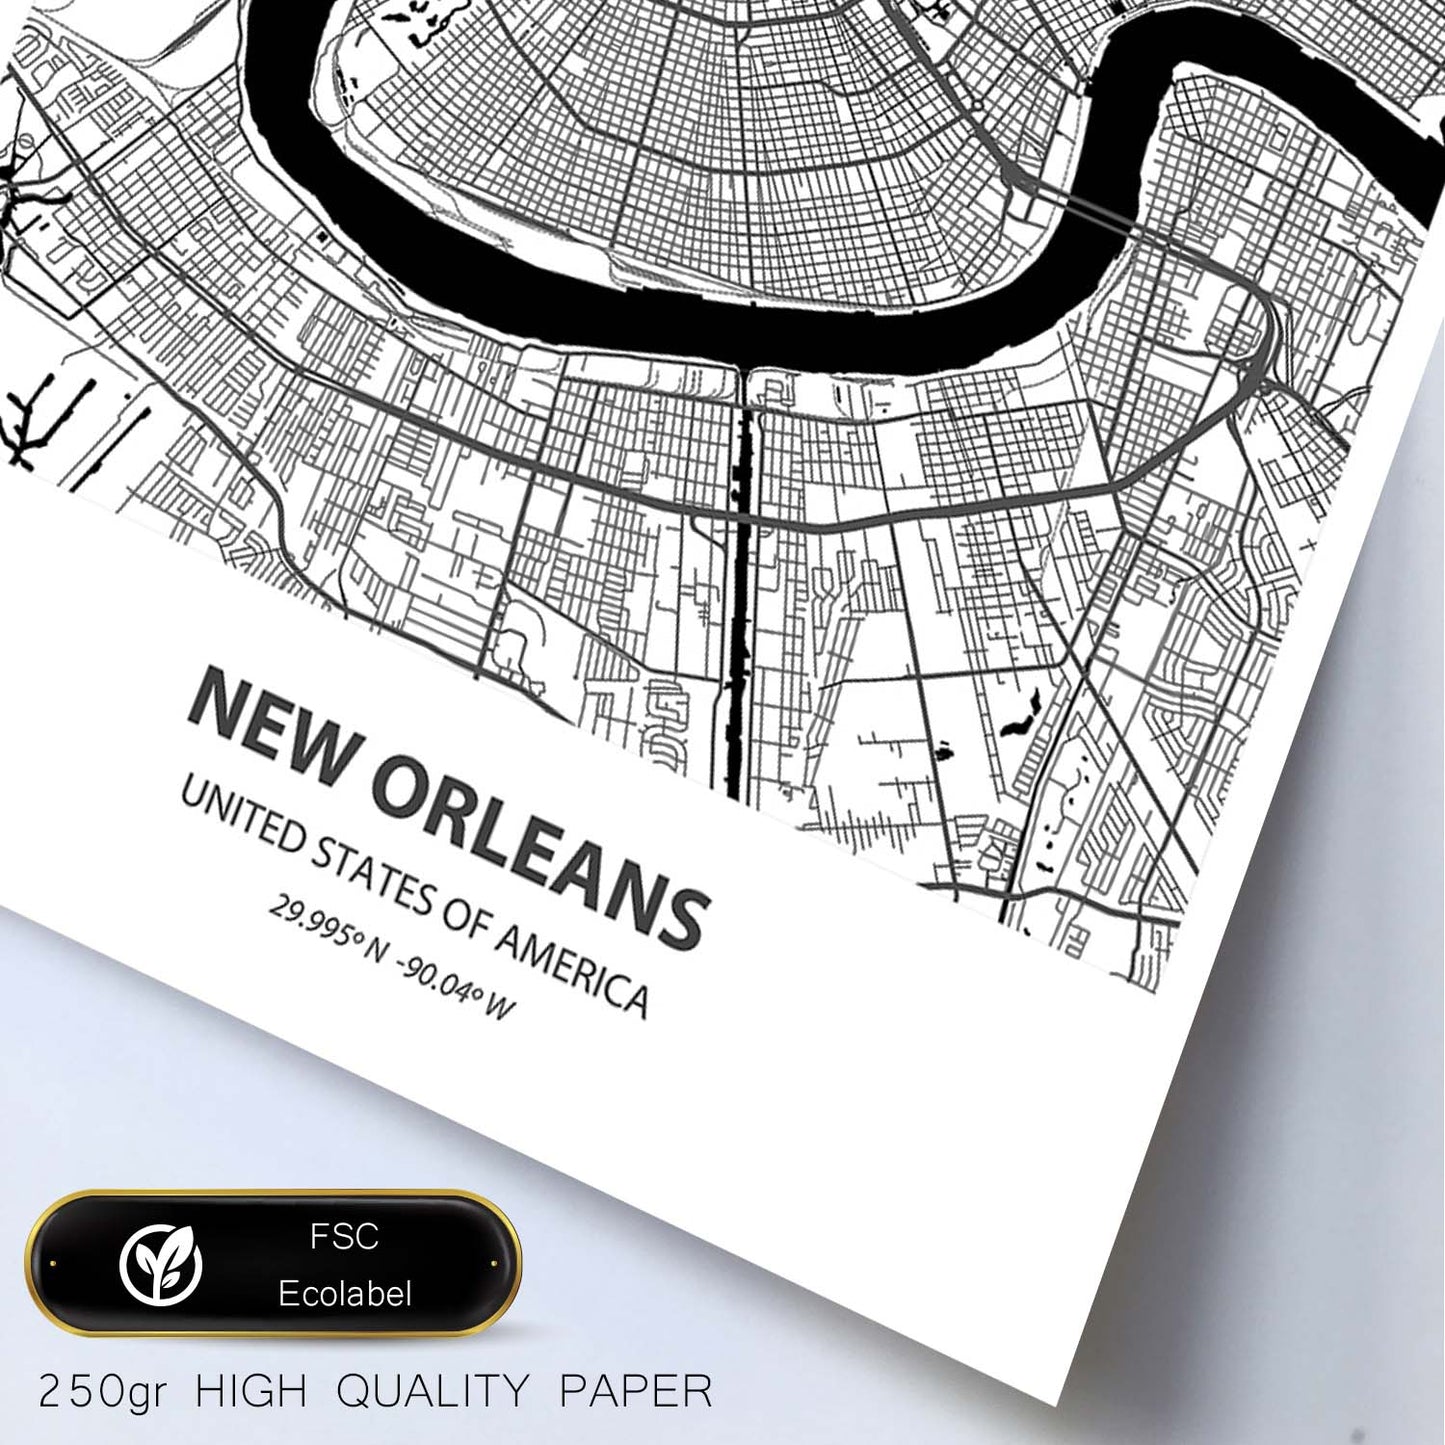 Poster con mapa de New Orleans - USA. Láminas de ciudades de Estados Unidos con mares y ríos en color negro.-Artwork-Nacnic-Nacnic Estudio SL